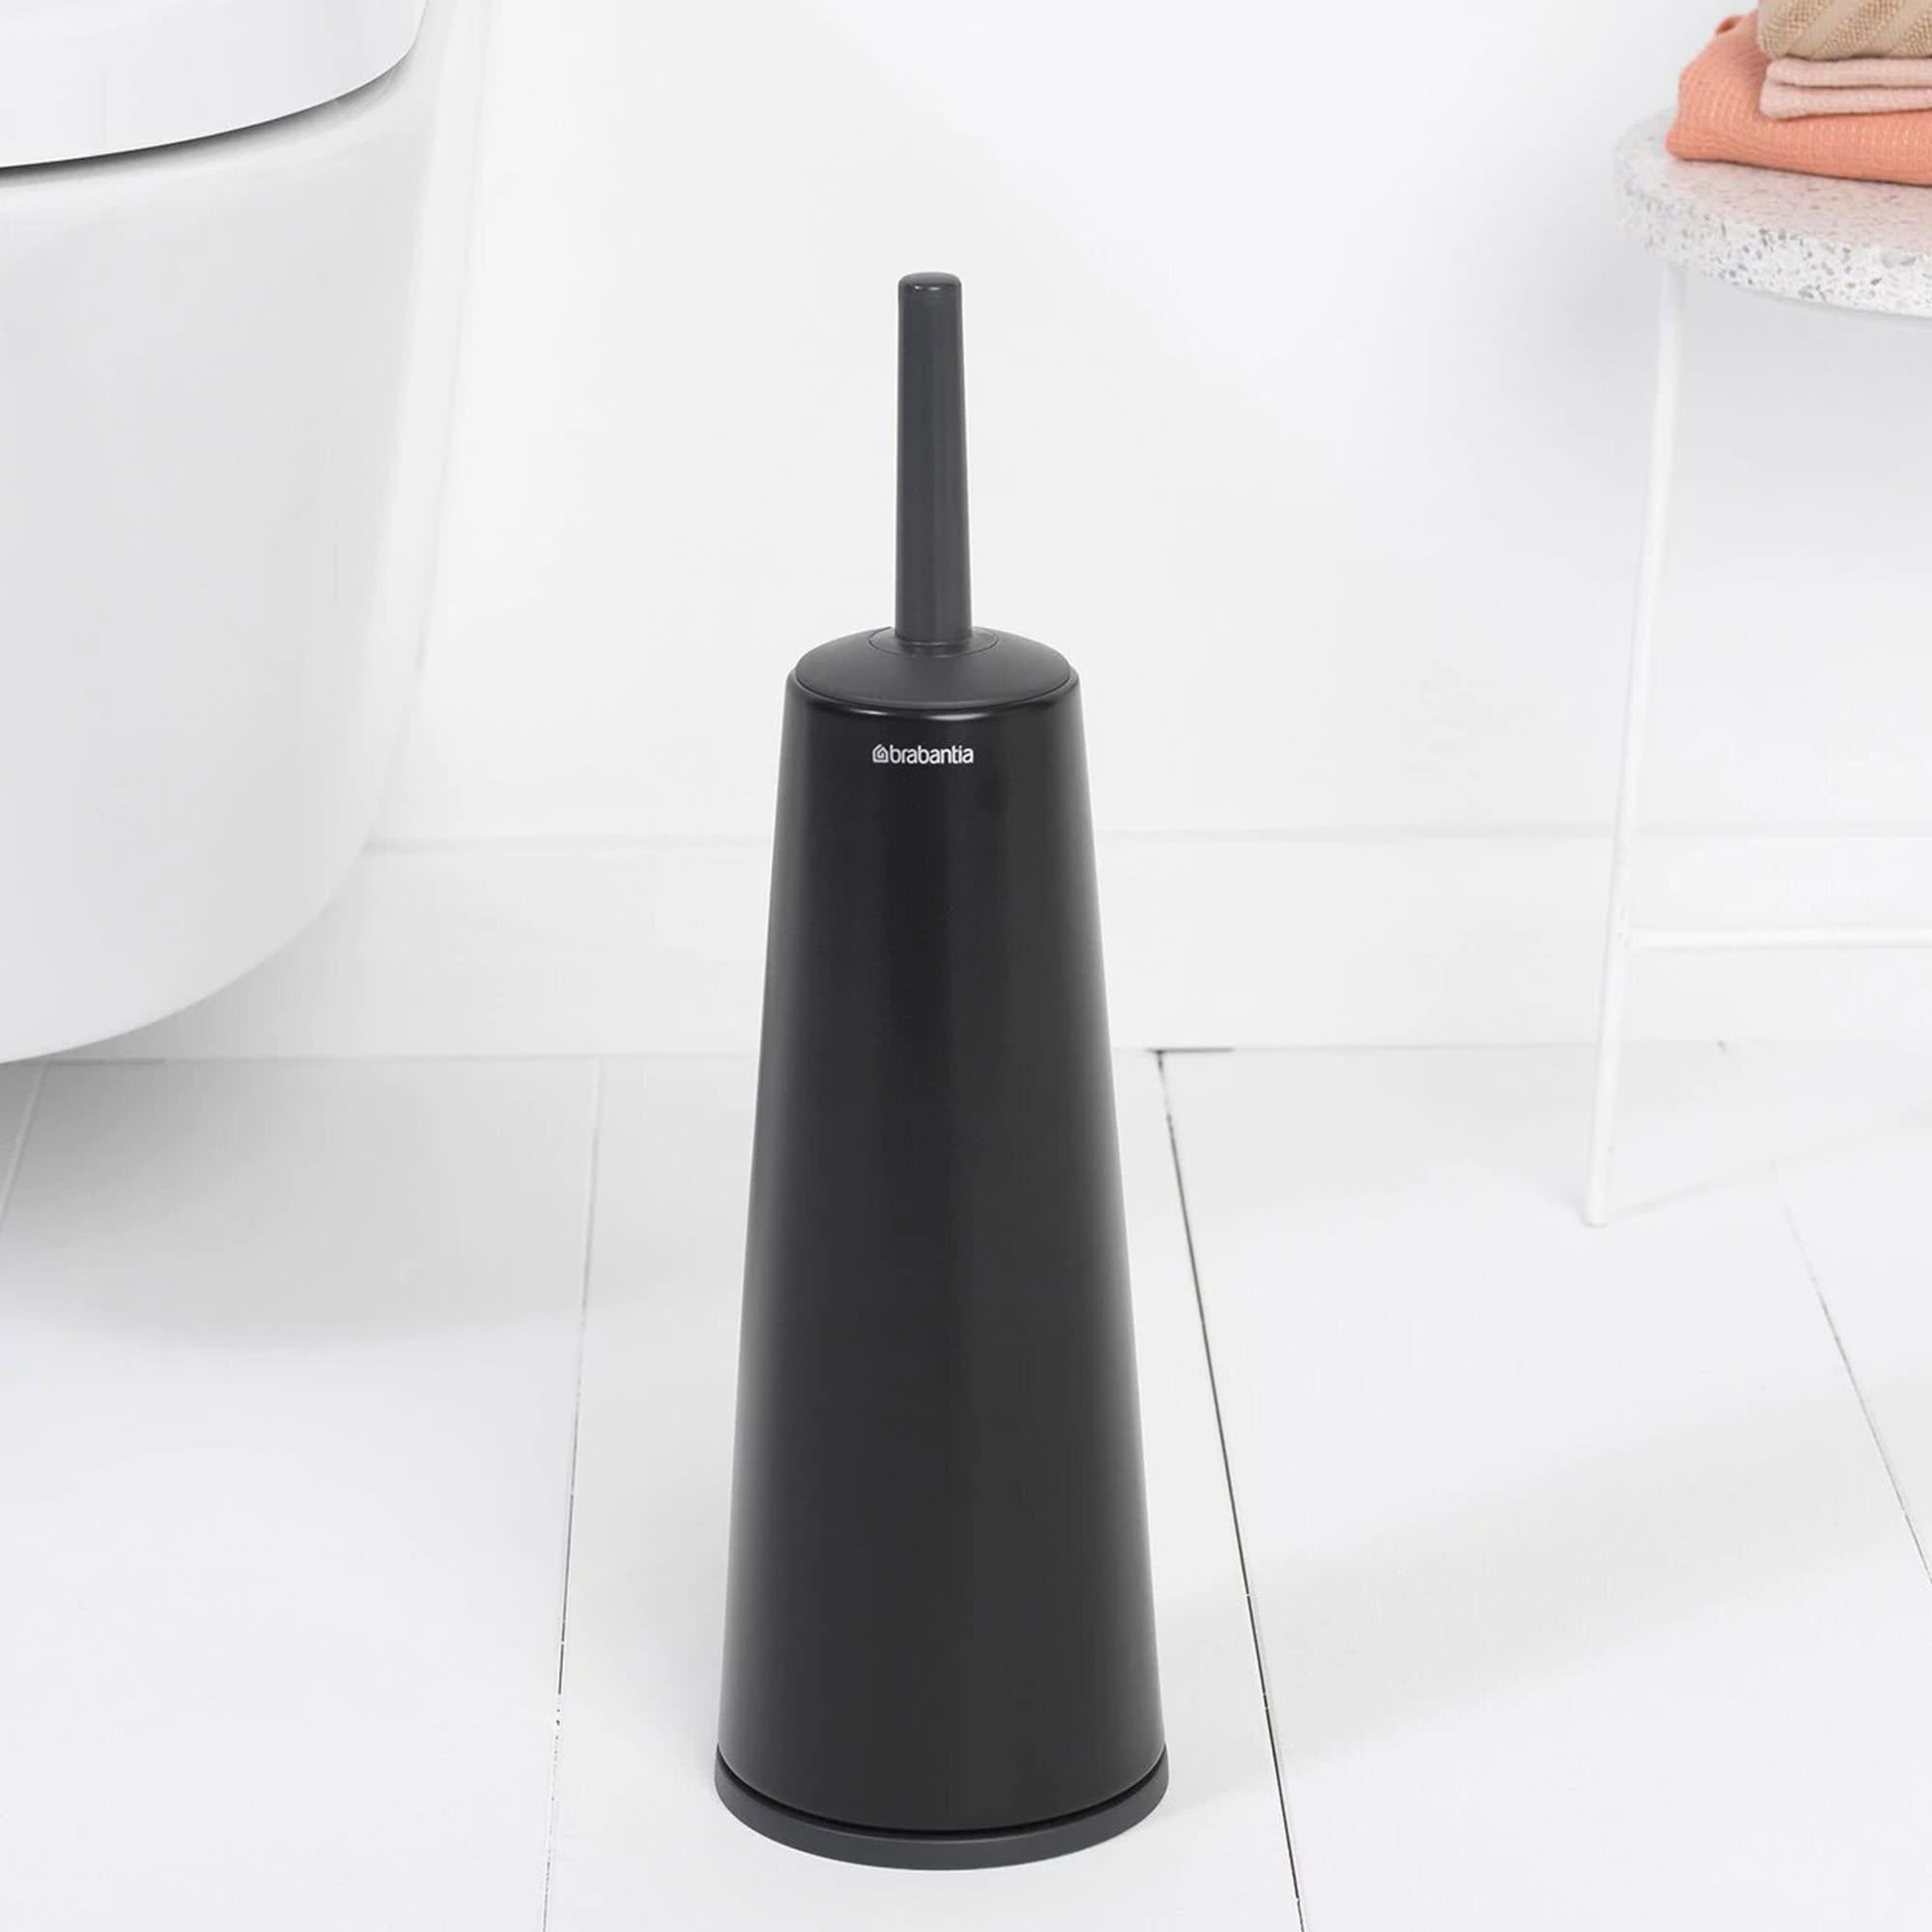 Brabantia Toilet Brush and Holder Matte Black Image 2